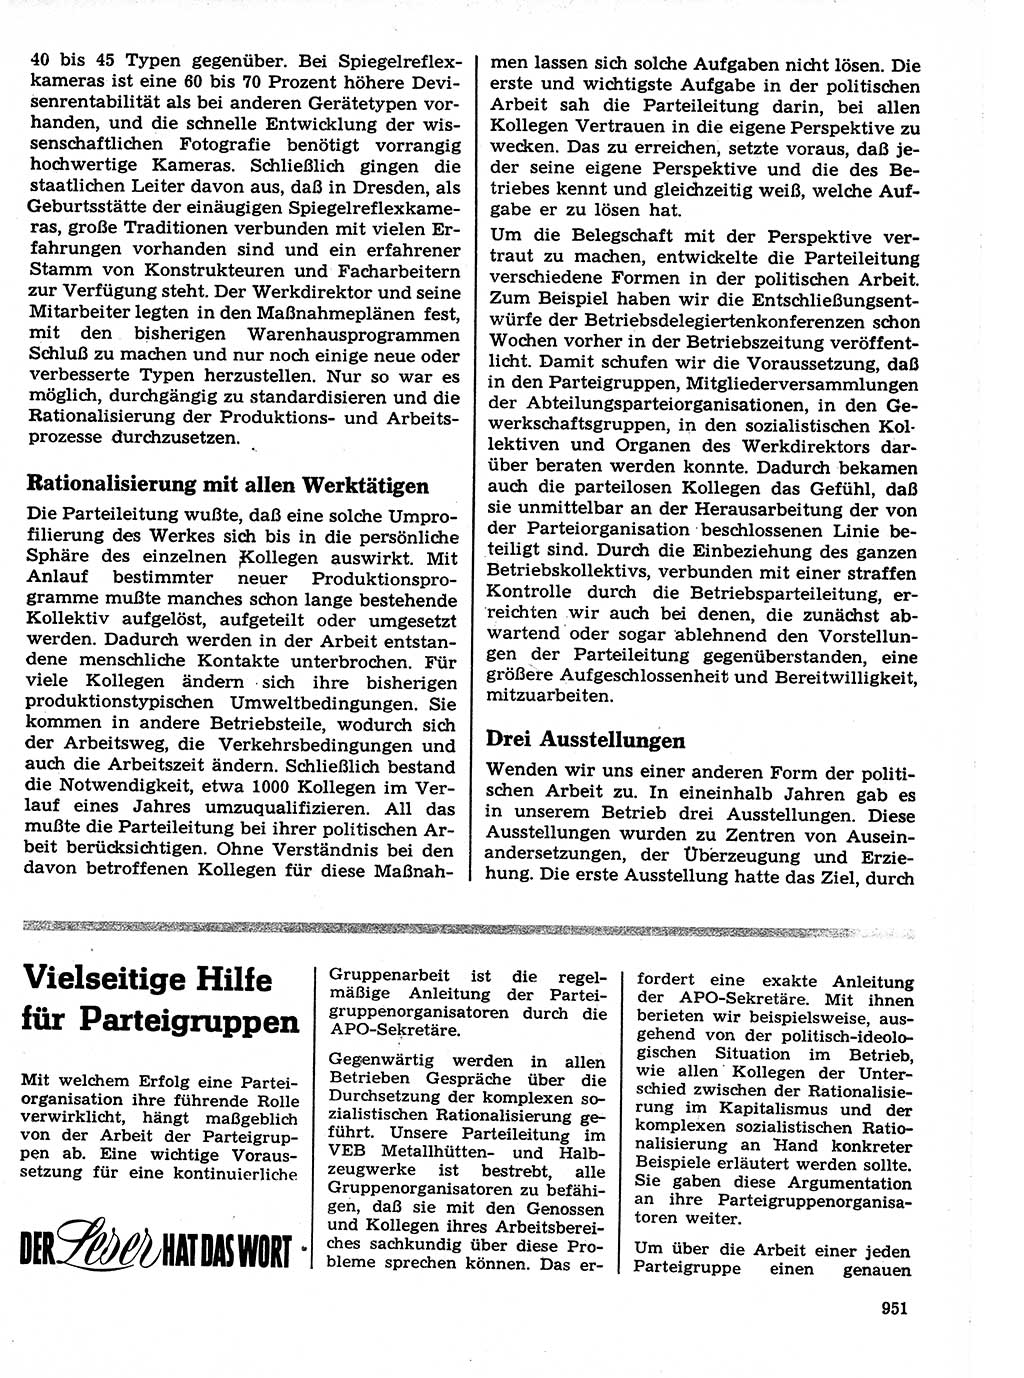 Neuer Weg (NW), Organ des Zentralkomitees (ZK) der SED (Sozialistische Einheitspartei Deutschlands) für Fragen des Parteilebens, 21. Jahrgang [Deutsche Demokratische Republik (DDR)] 1966, Seite 951 (NW ZK SED DDR 1966, S. 951)